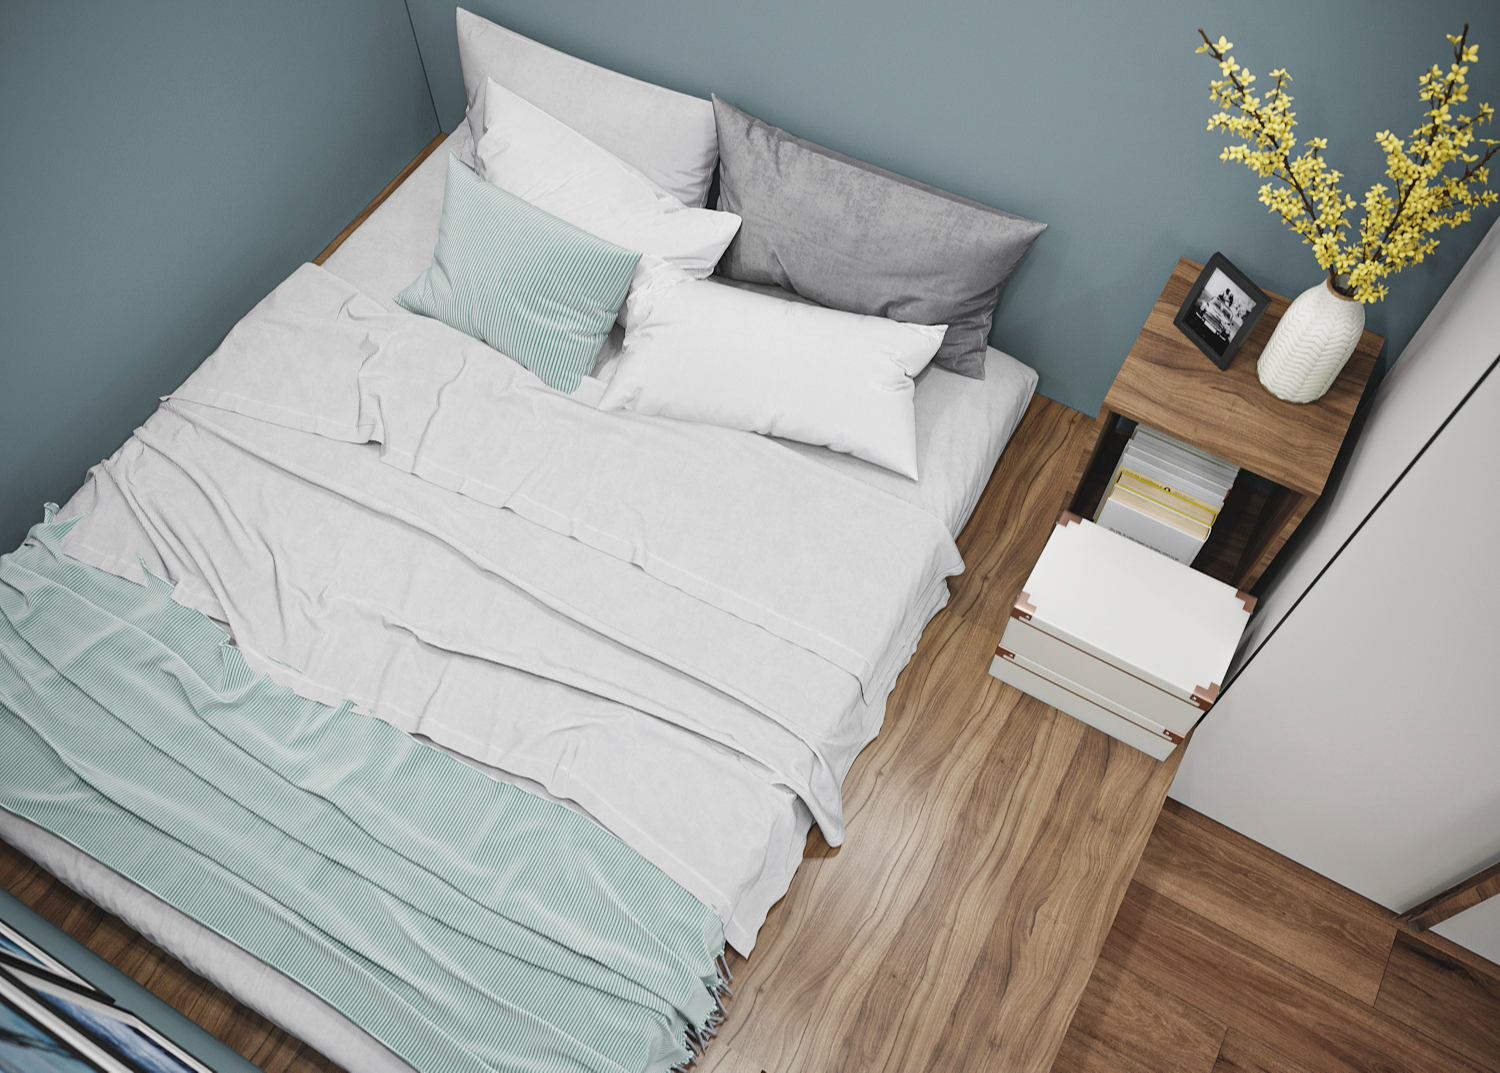 Главный плюс кровати-подиума – возможность создать дополнительные места хранения и расположение комфортного спального места в узкой вытянутой комнате